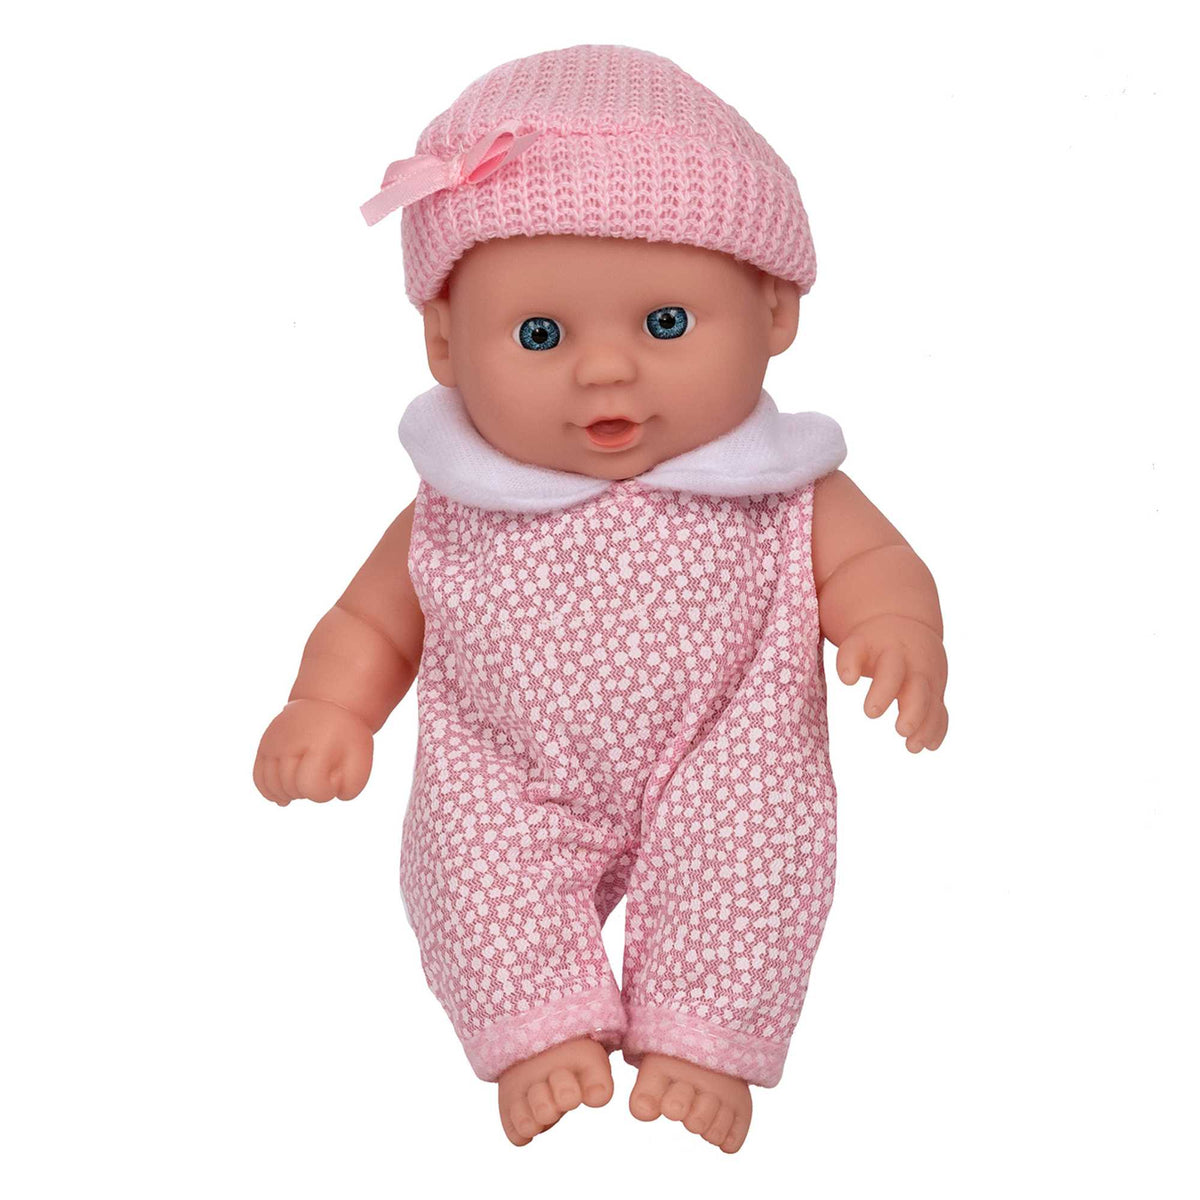 Dolly Tots Twin Dolls Pram + Babyboo Cutie Baby Dolls - Bundle